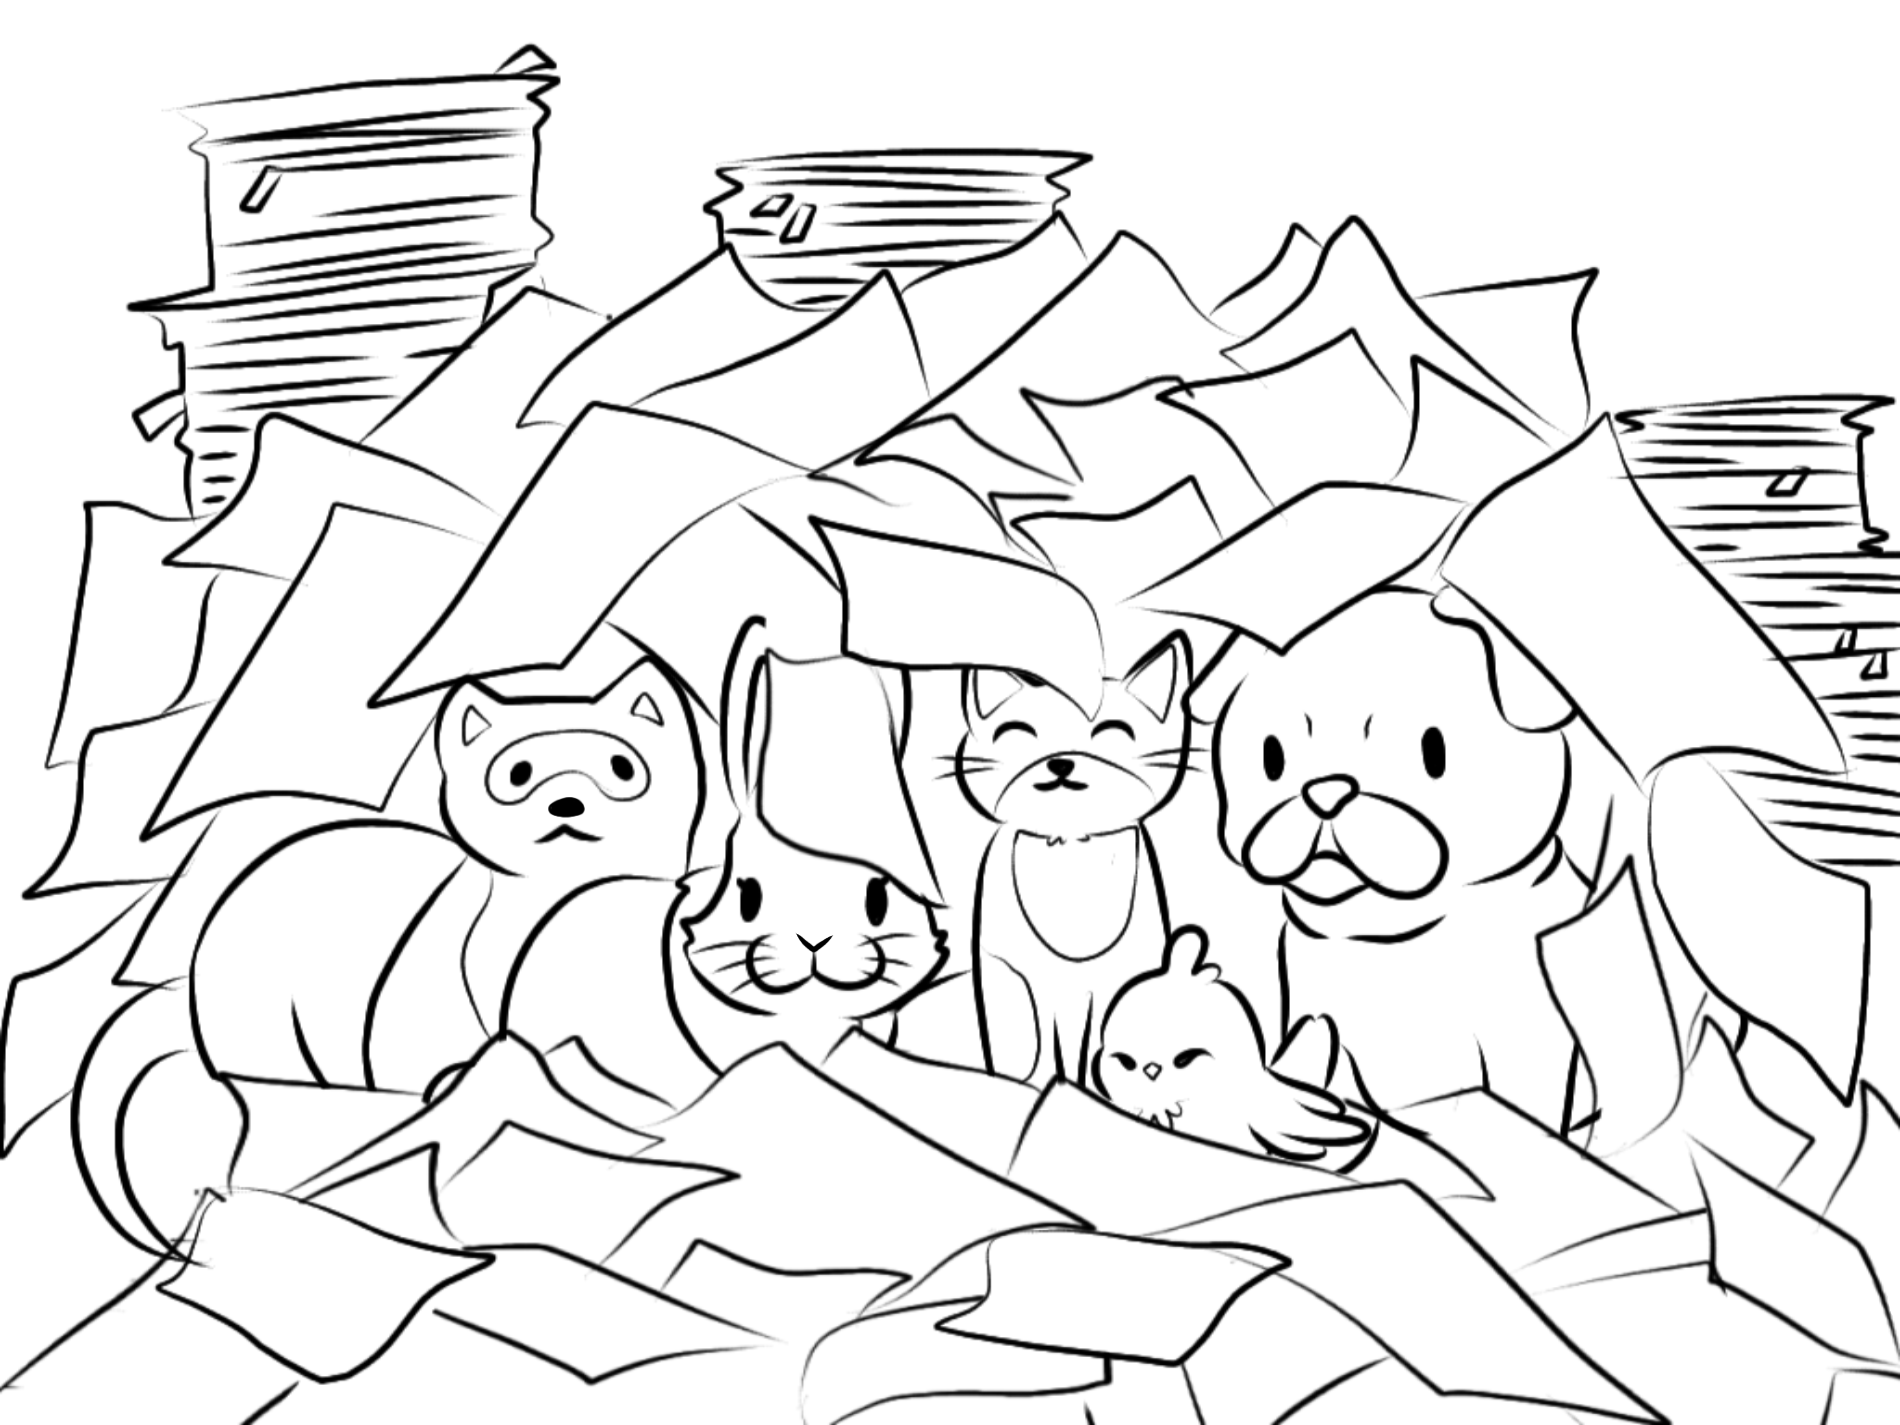 Five Animals buried under paper